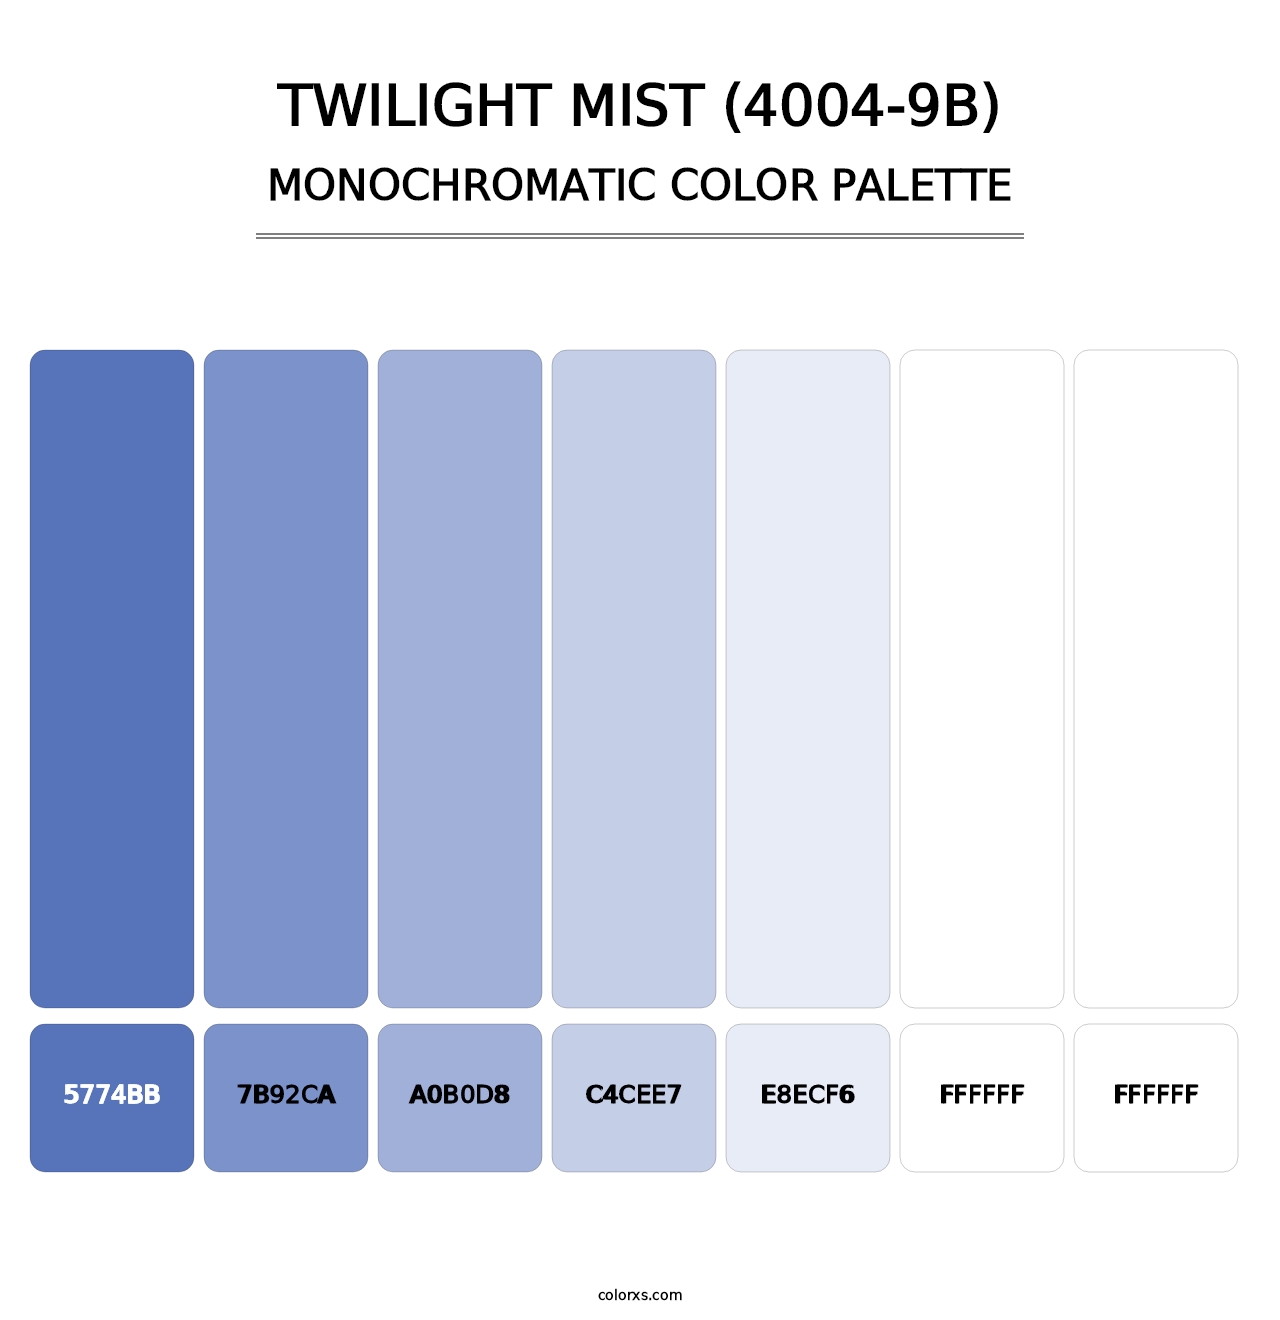 Twilight Mist (4004-9B) - Monochromatic Color Palette